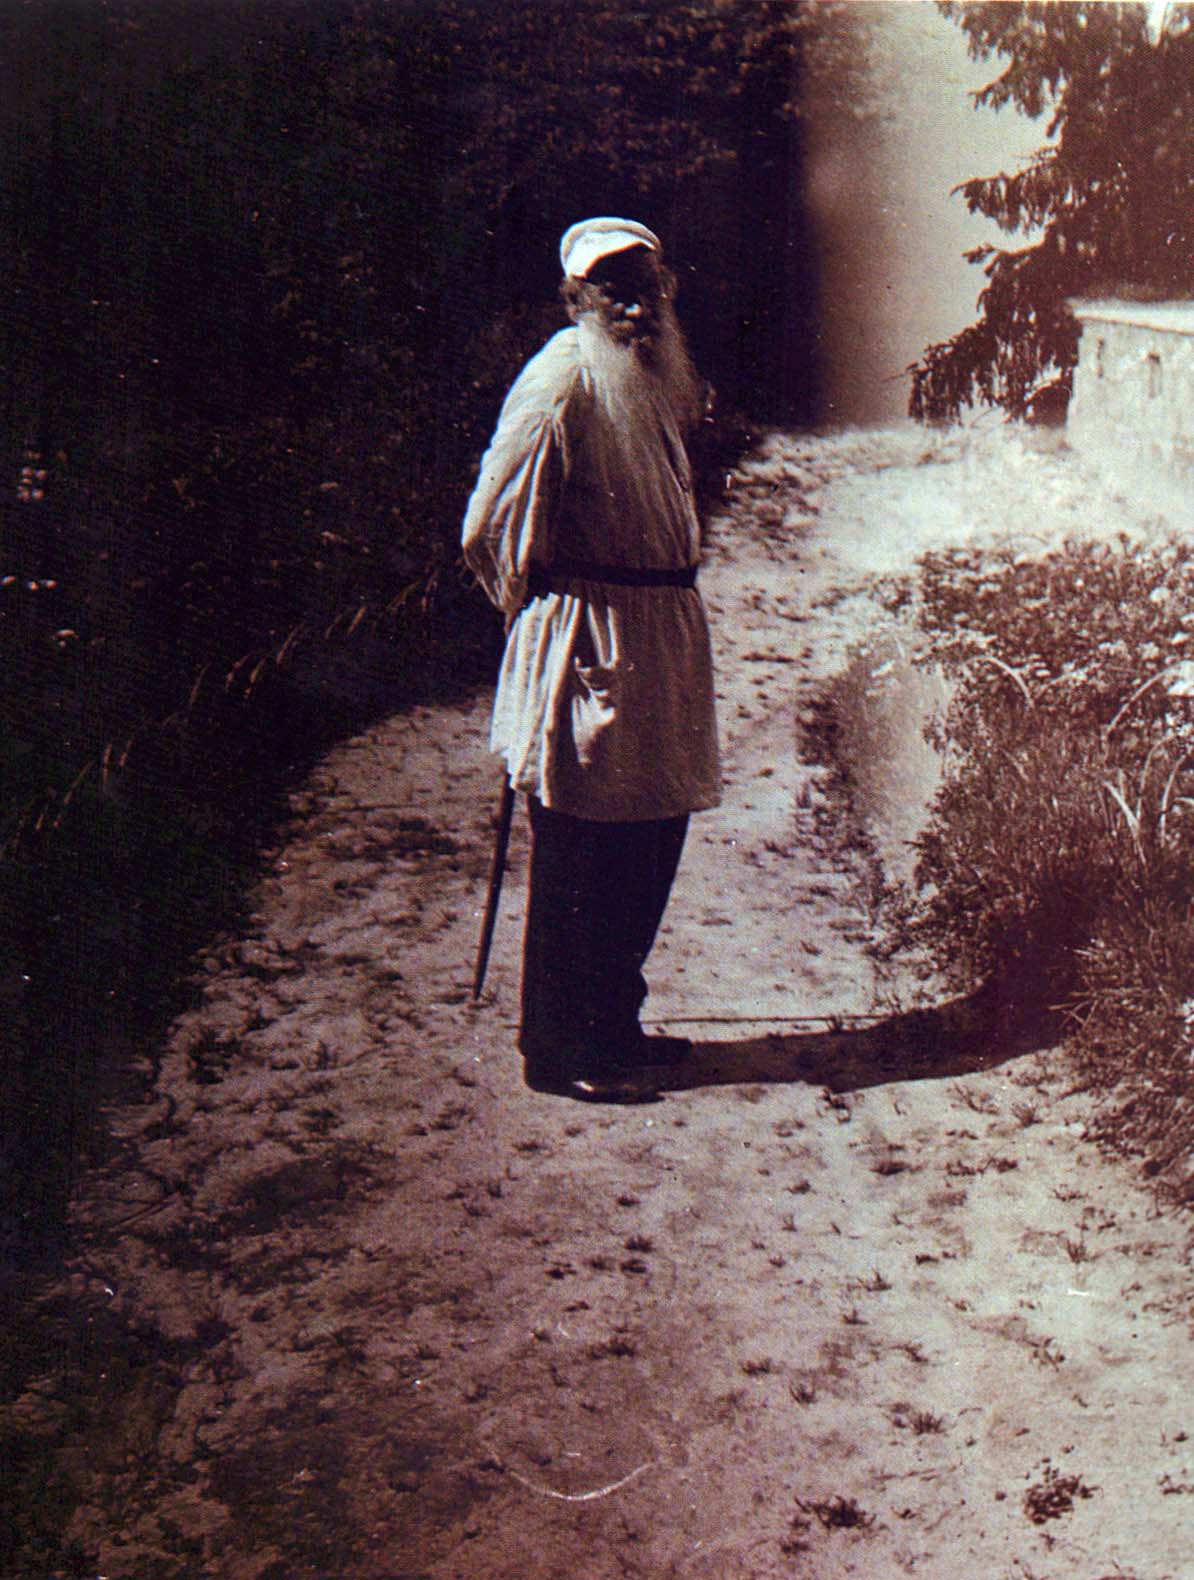 Л.Н. Толстой около дома в Ясной Поляне. Фотография В.Г. Черткова. 1908 г.